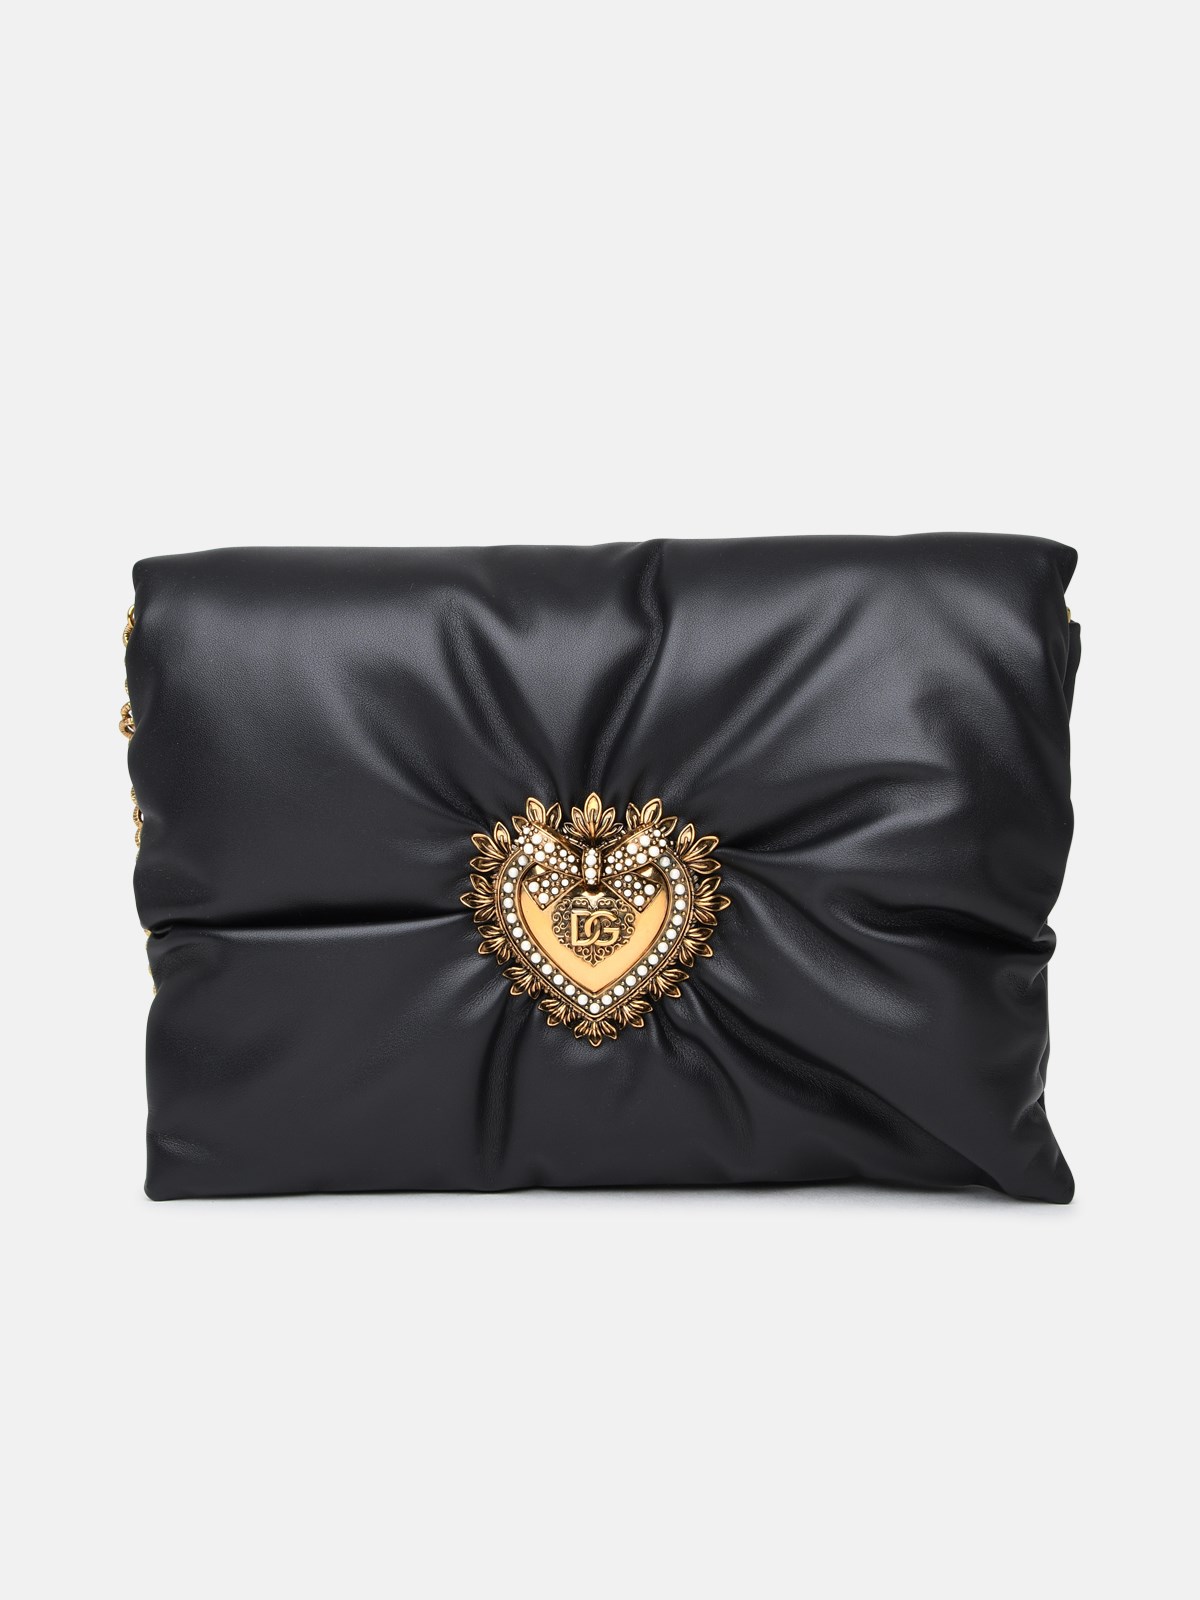 Dolce & Gabbana Tracolla Devotion In Black